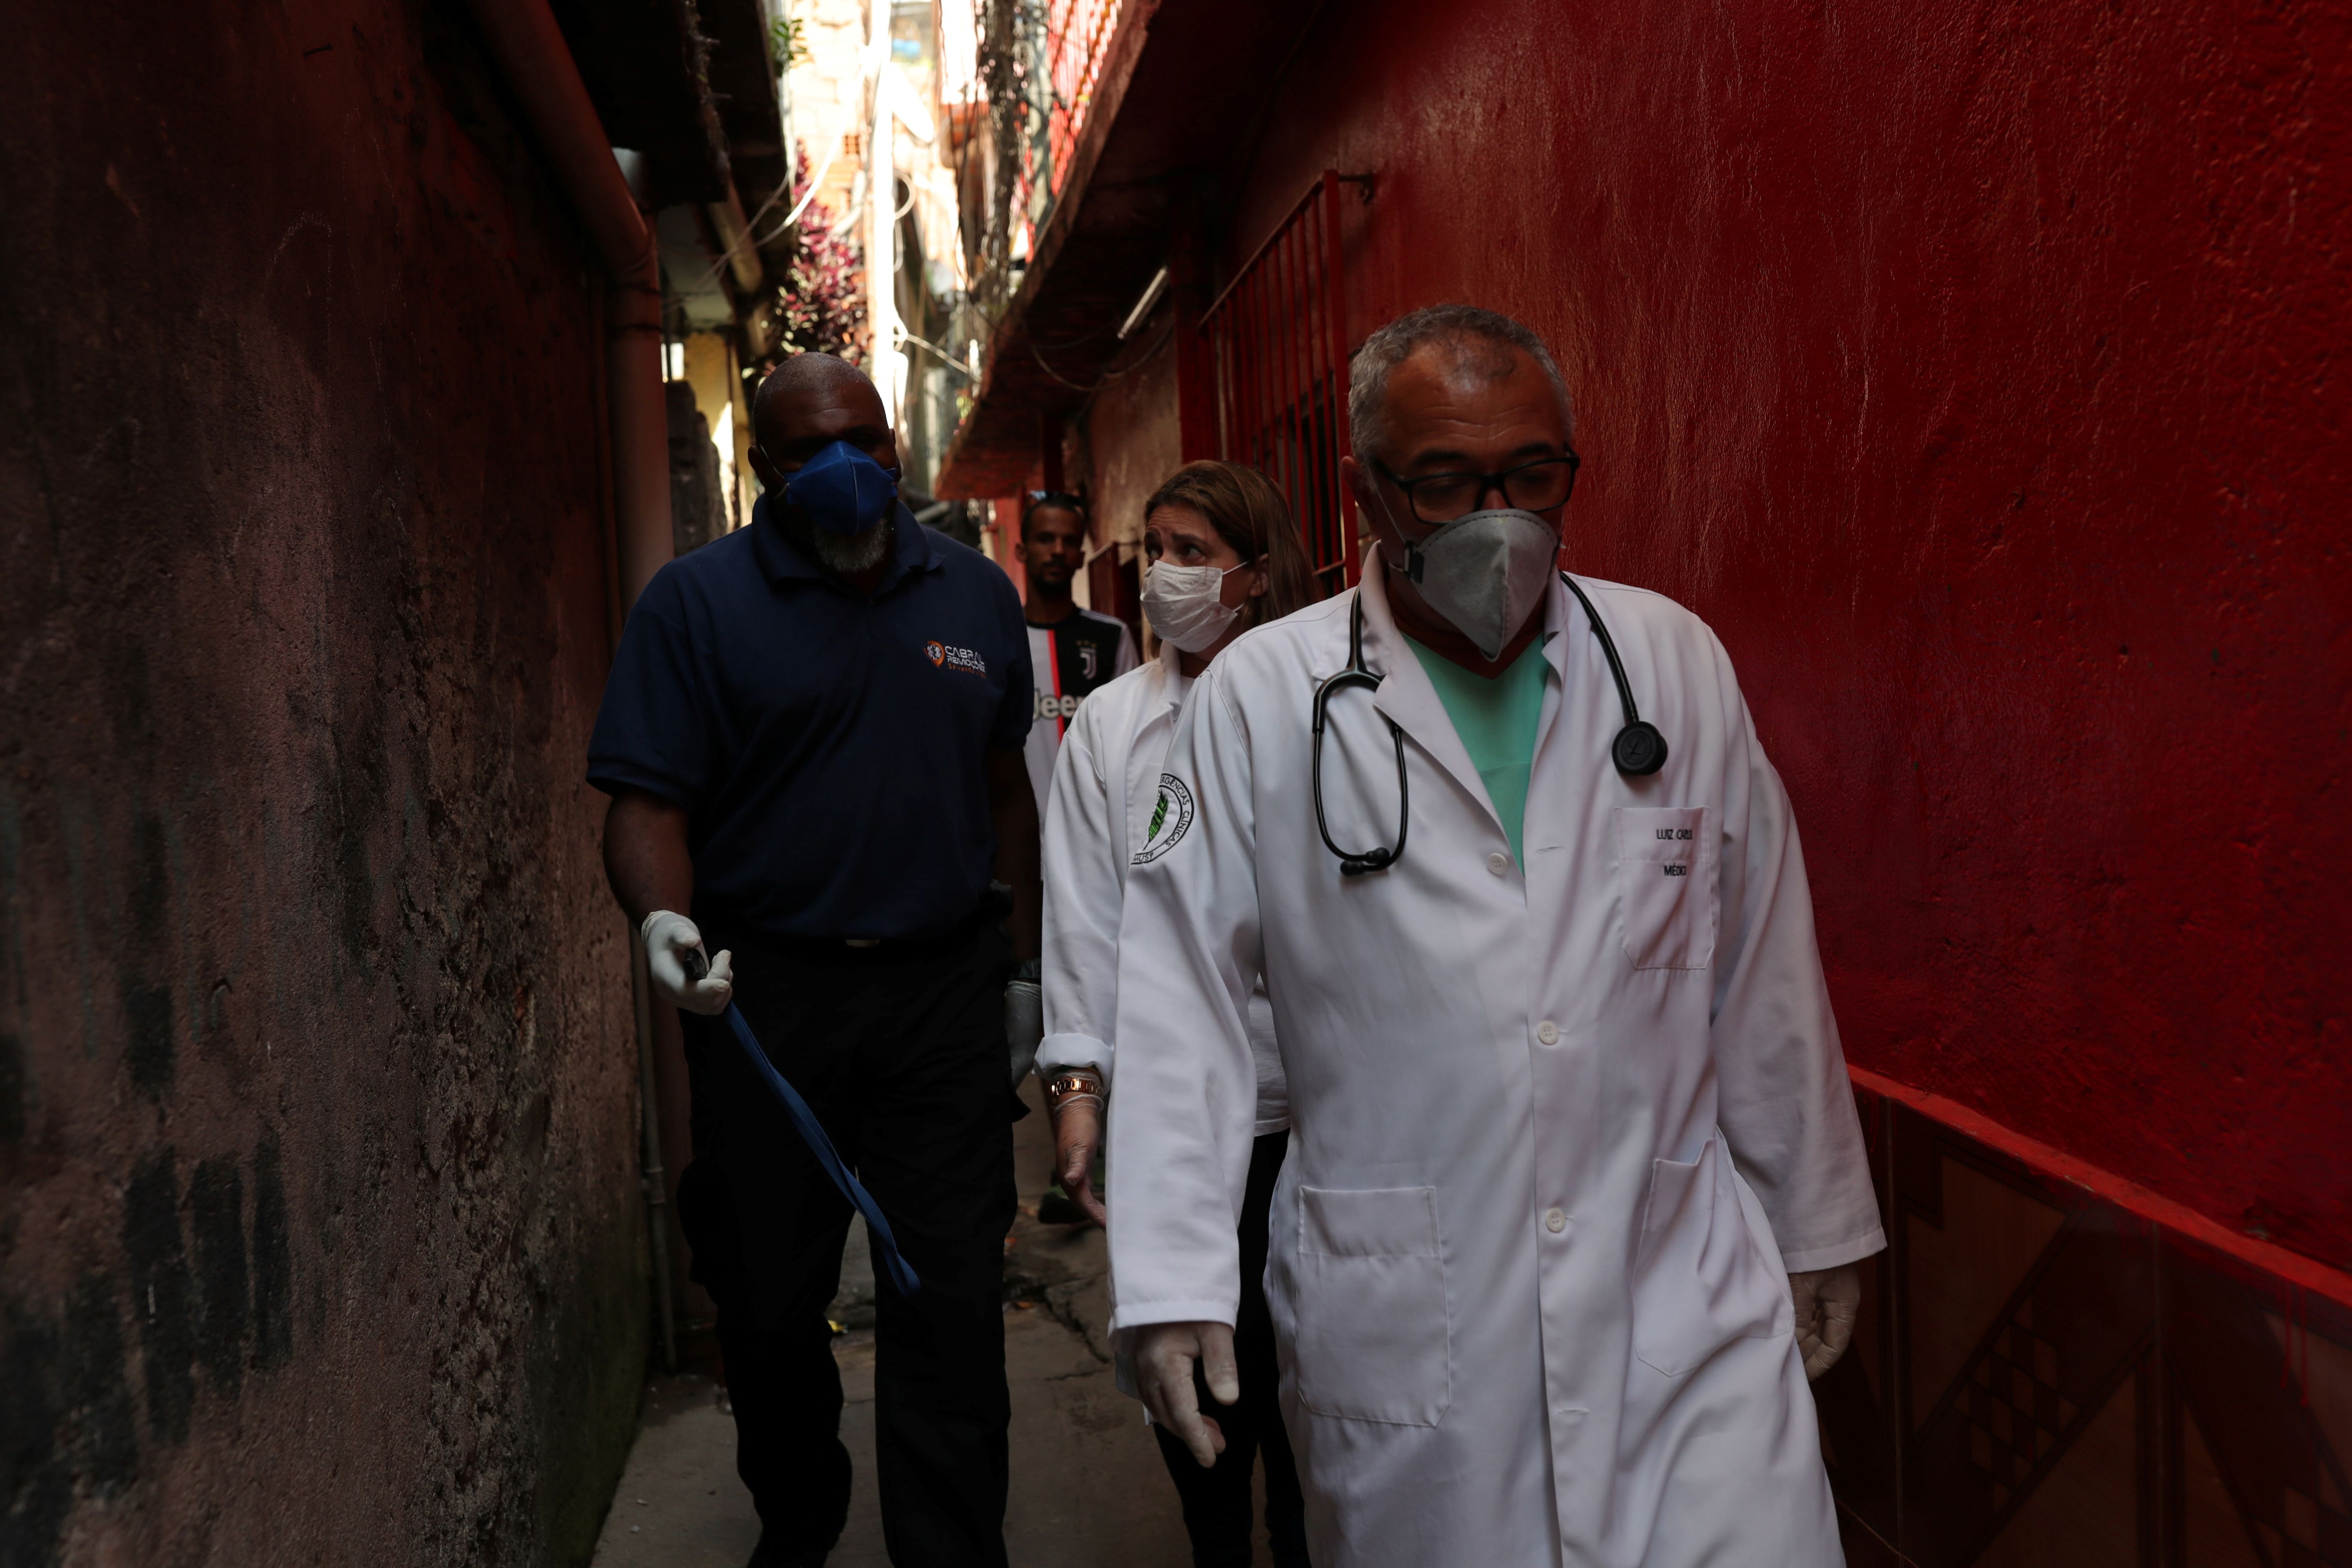 Un Grupo de médicos y enfermeros que cuidan la salud de los habitantes de la favela de Paraisopolis, en San Pablo. Fueron contratados por la asociación de residentes porque no confían en el sistema de salud estatal ante esta pandemia. REUTERS/Amanda Perobelli